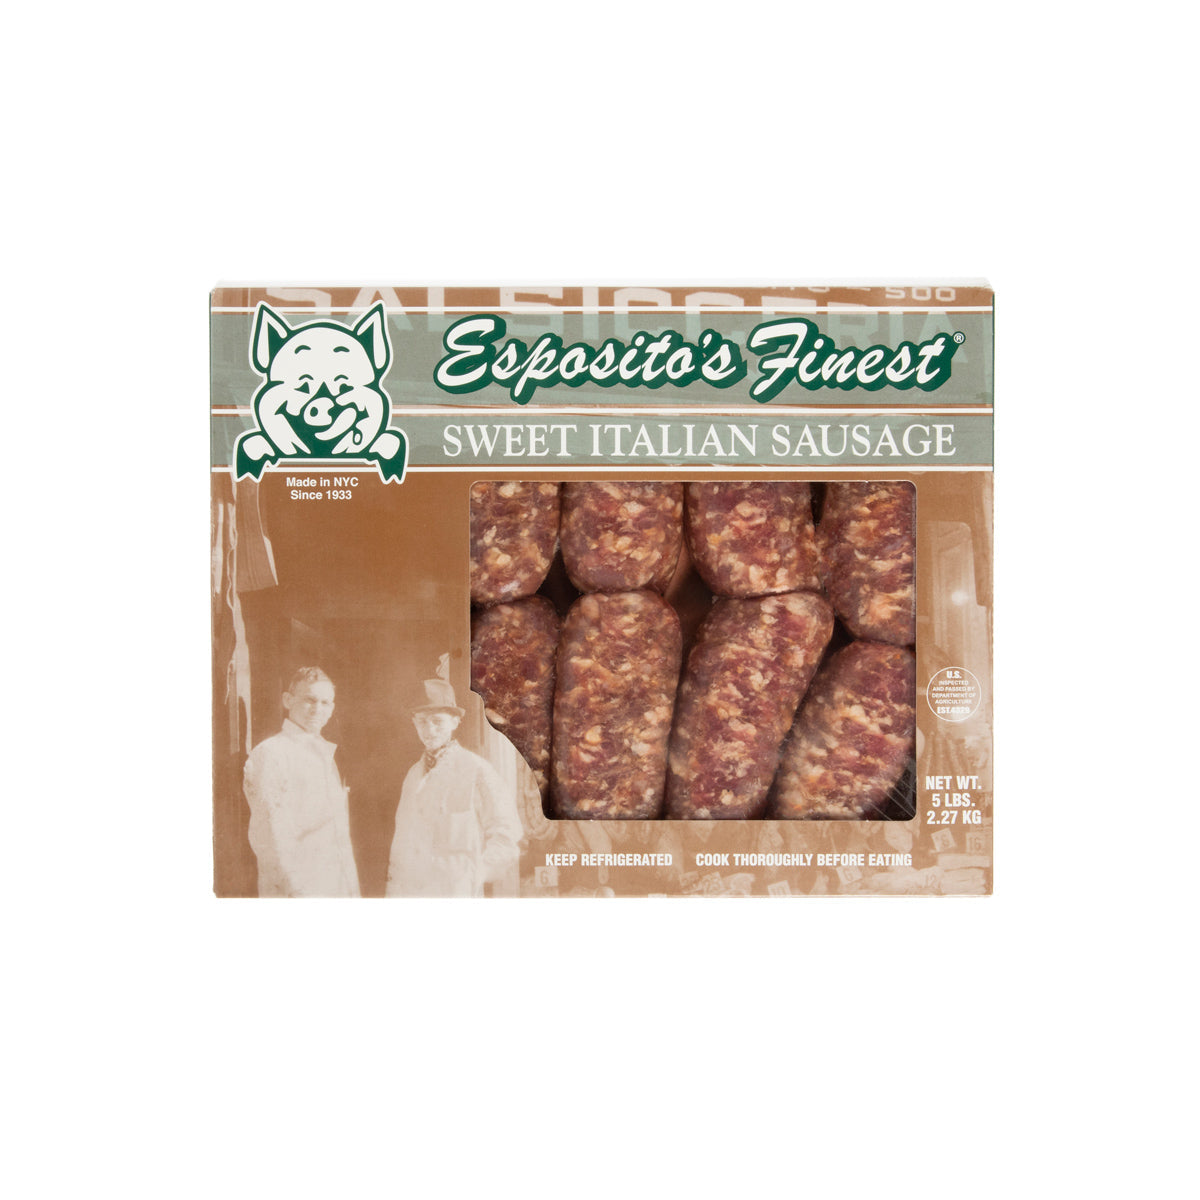 Esposito Sausage Frozen Sweet Italian Sausages 2.5 OZ